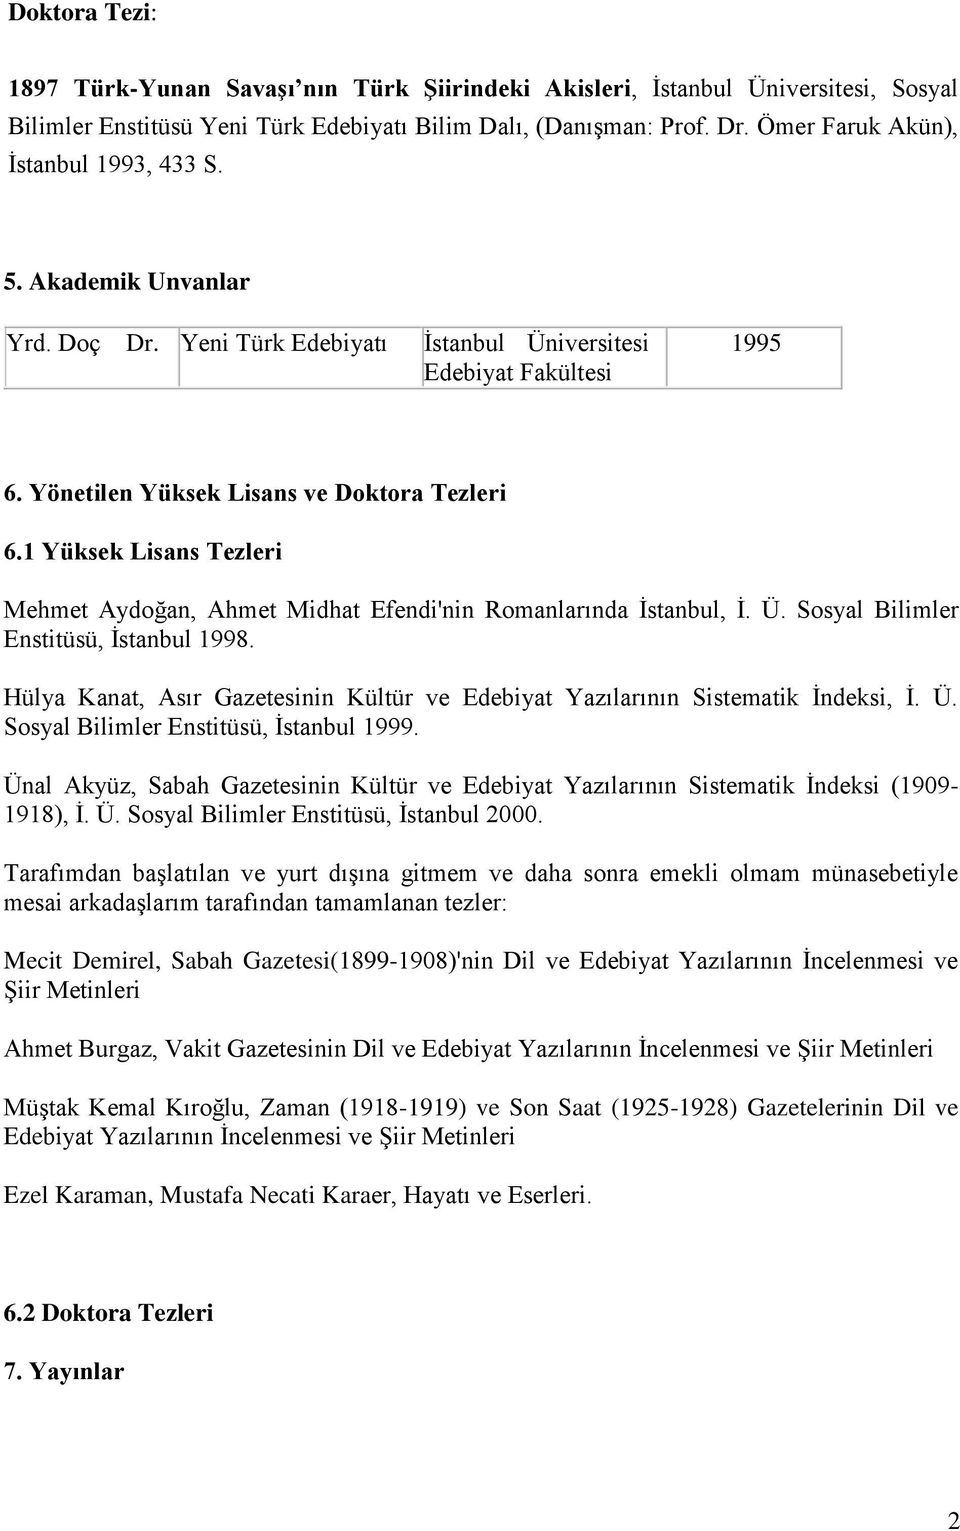 1 Yüksek Lisans Tezleri Mehmet Aydoğan, Ahmet Midhat Efendi'nin Romanlarında İstanbul, İ. Ü. Sosyal Bilimler Enstitüsü, İstanbul 1998.